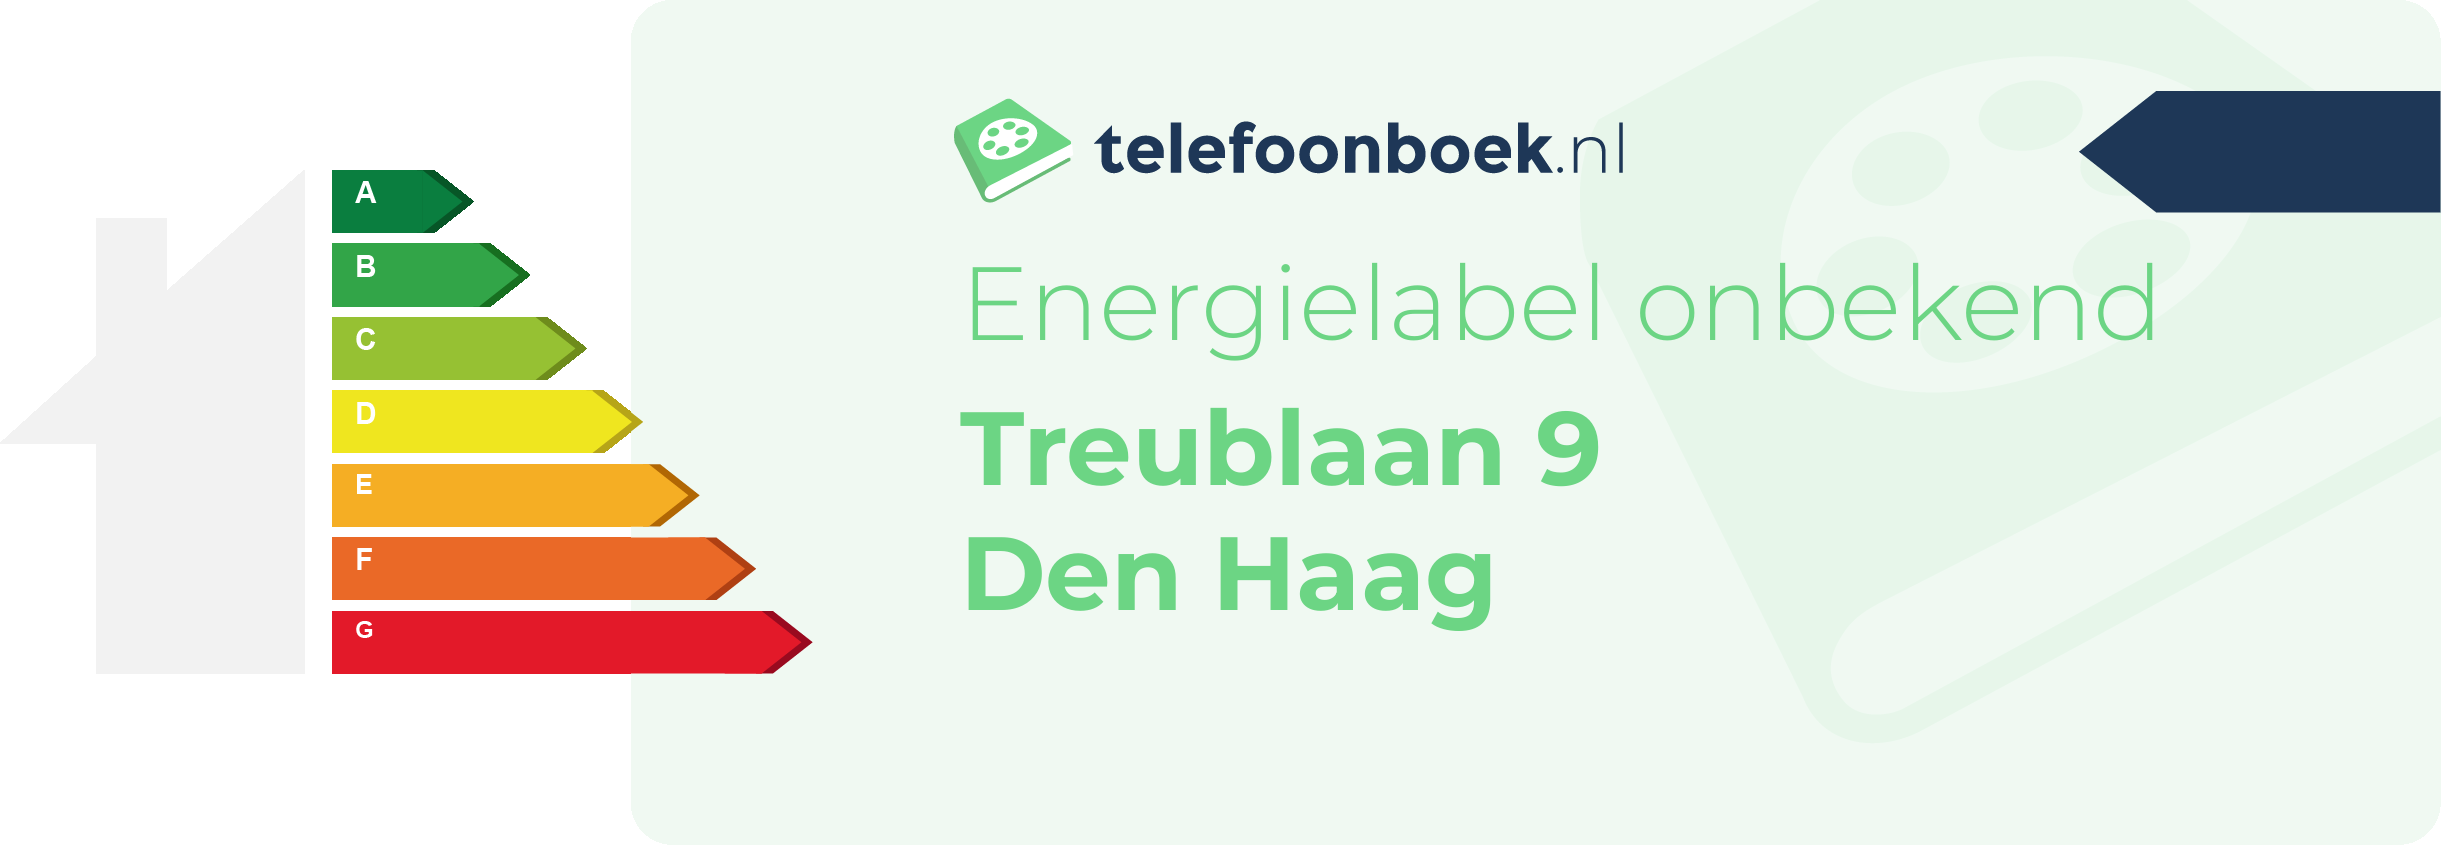 Energielabel Treublaan 9 Den Haag